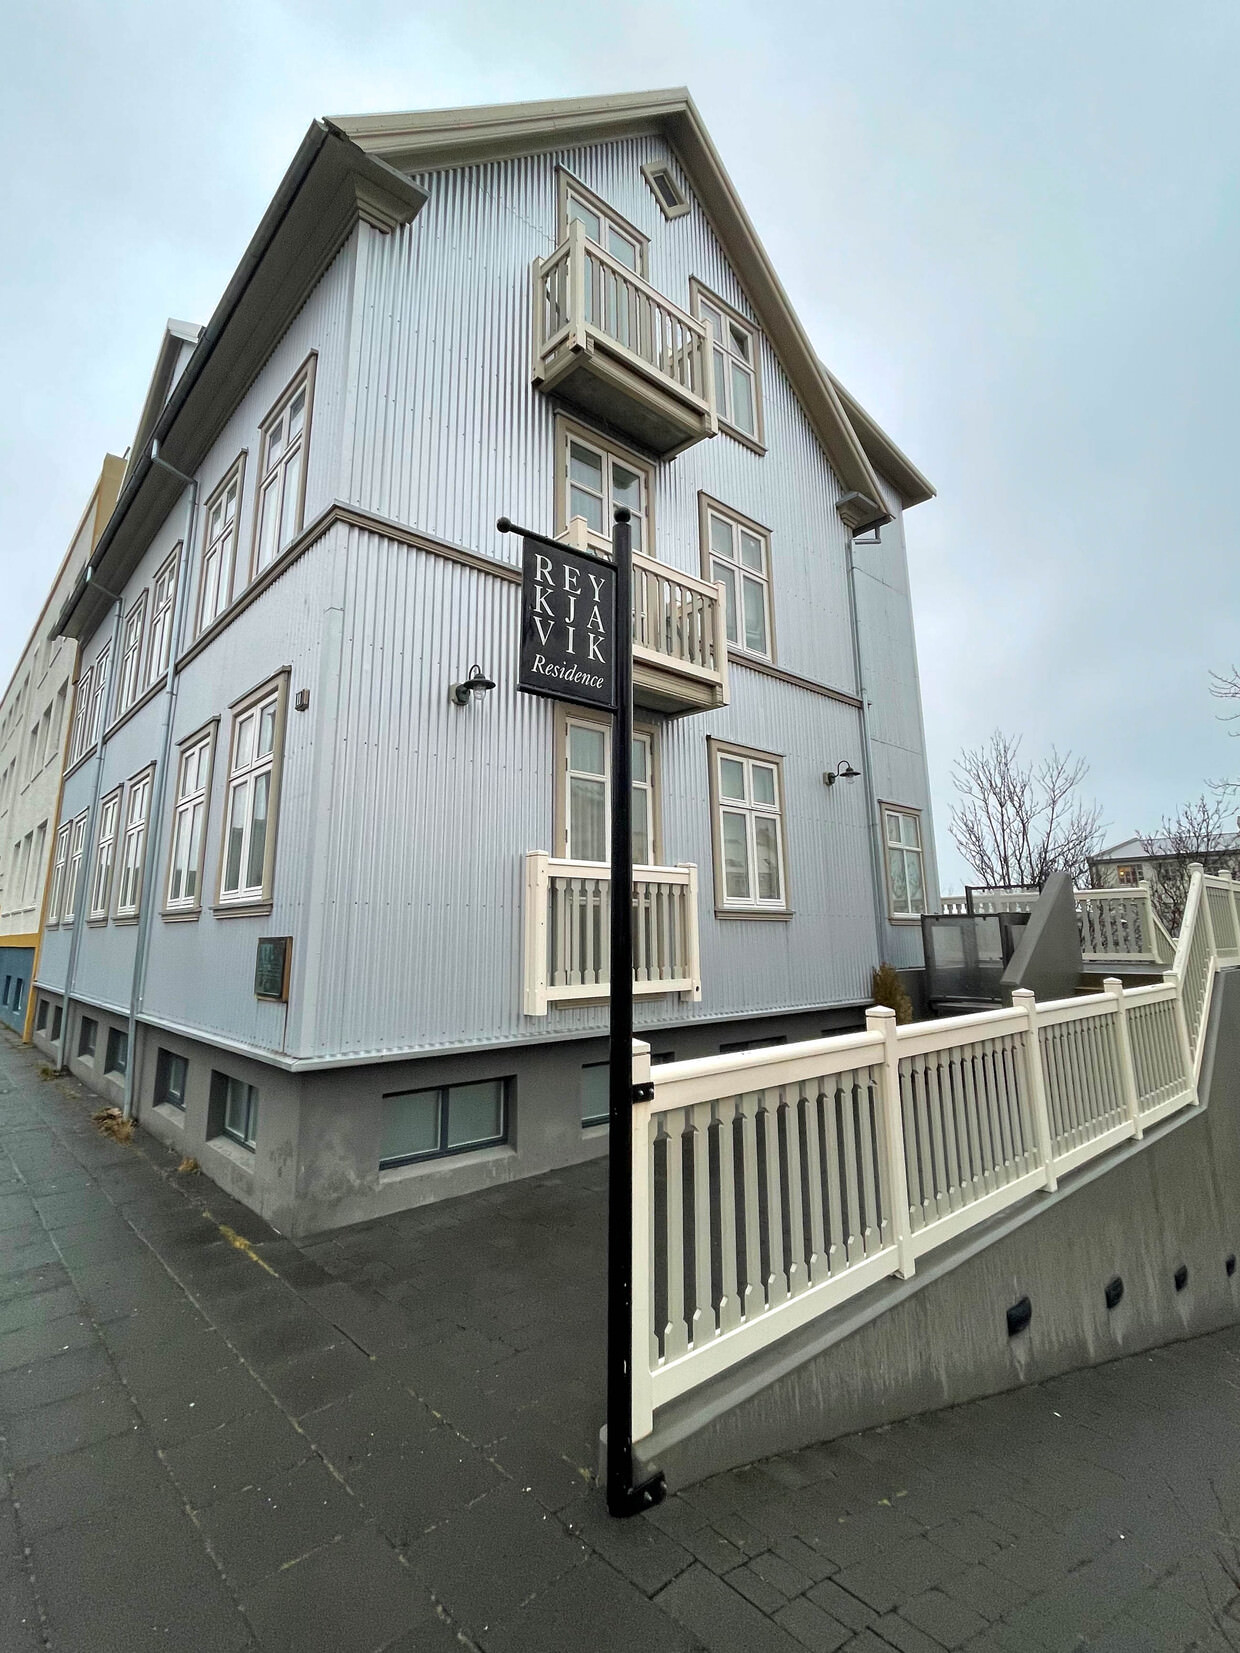 Our hotel, Reykjavik Residences